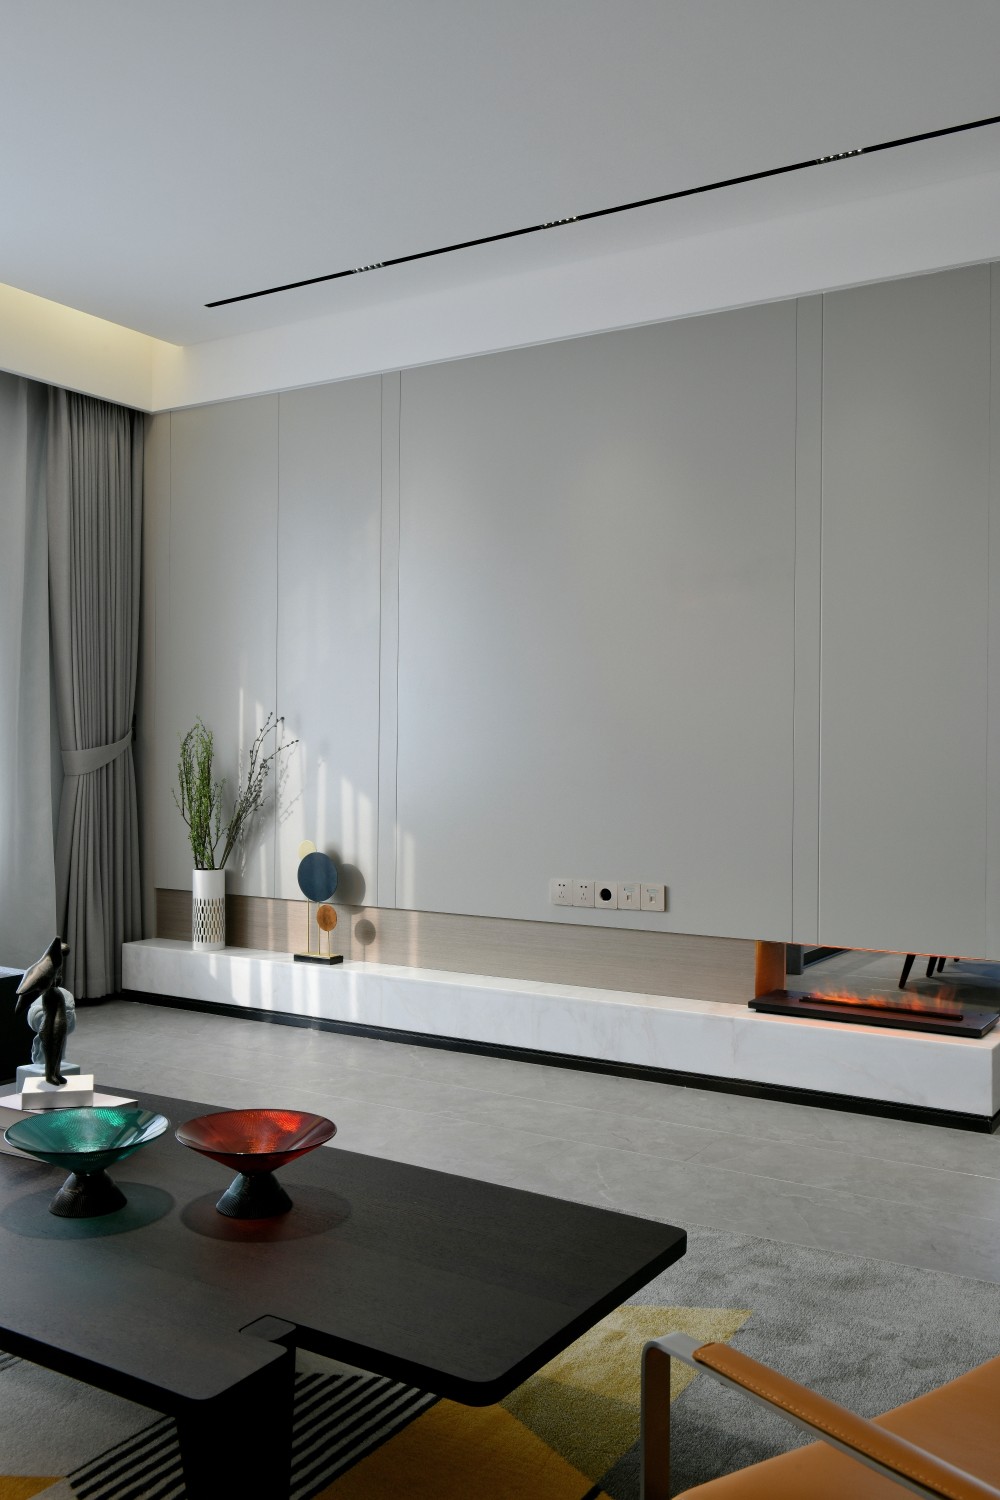 透室居所， 重塑设计的温度和质感 | 诚品设计-17